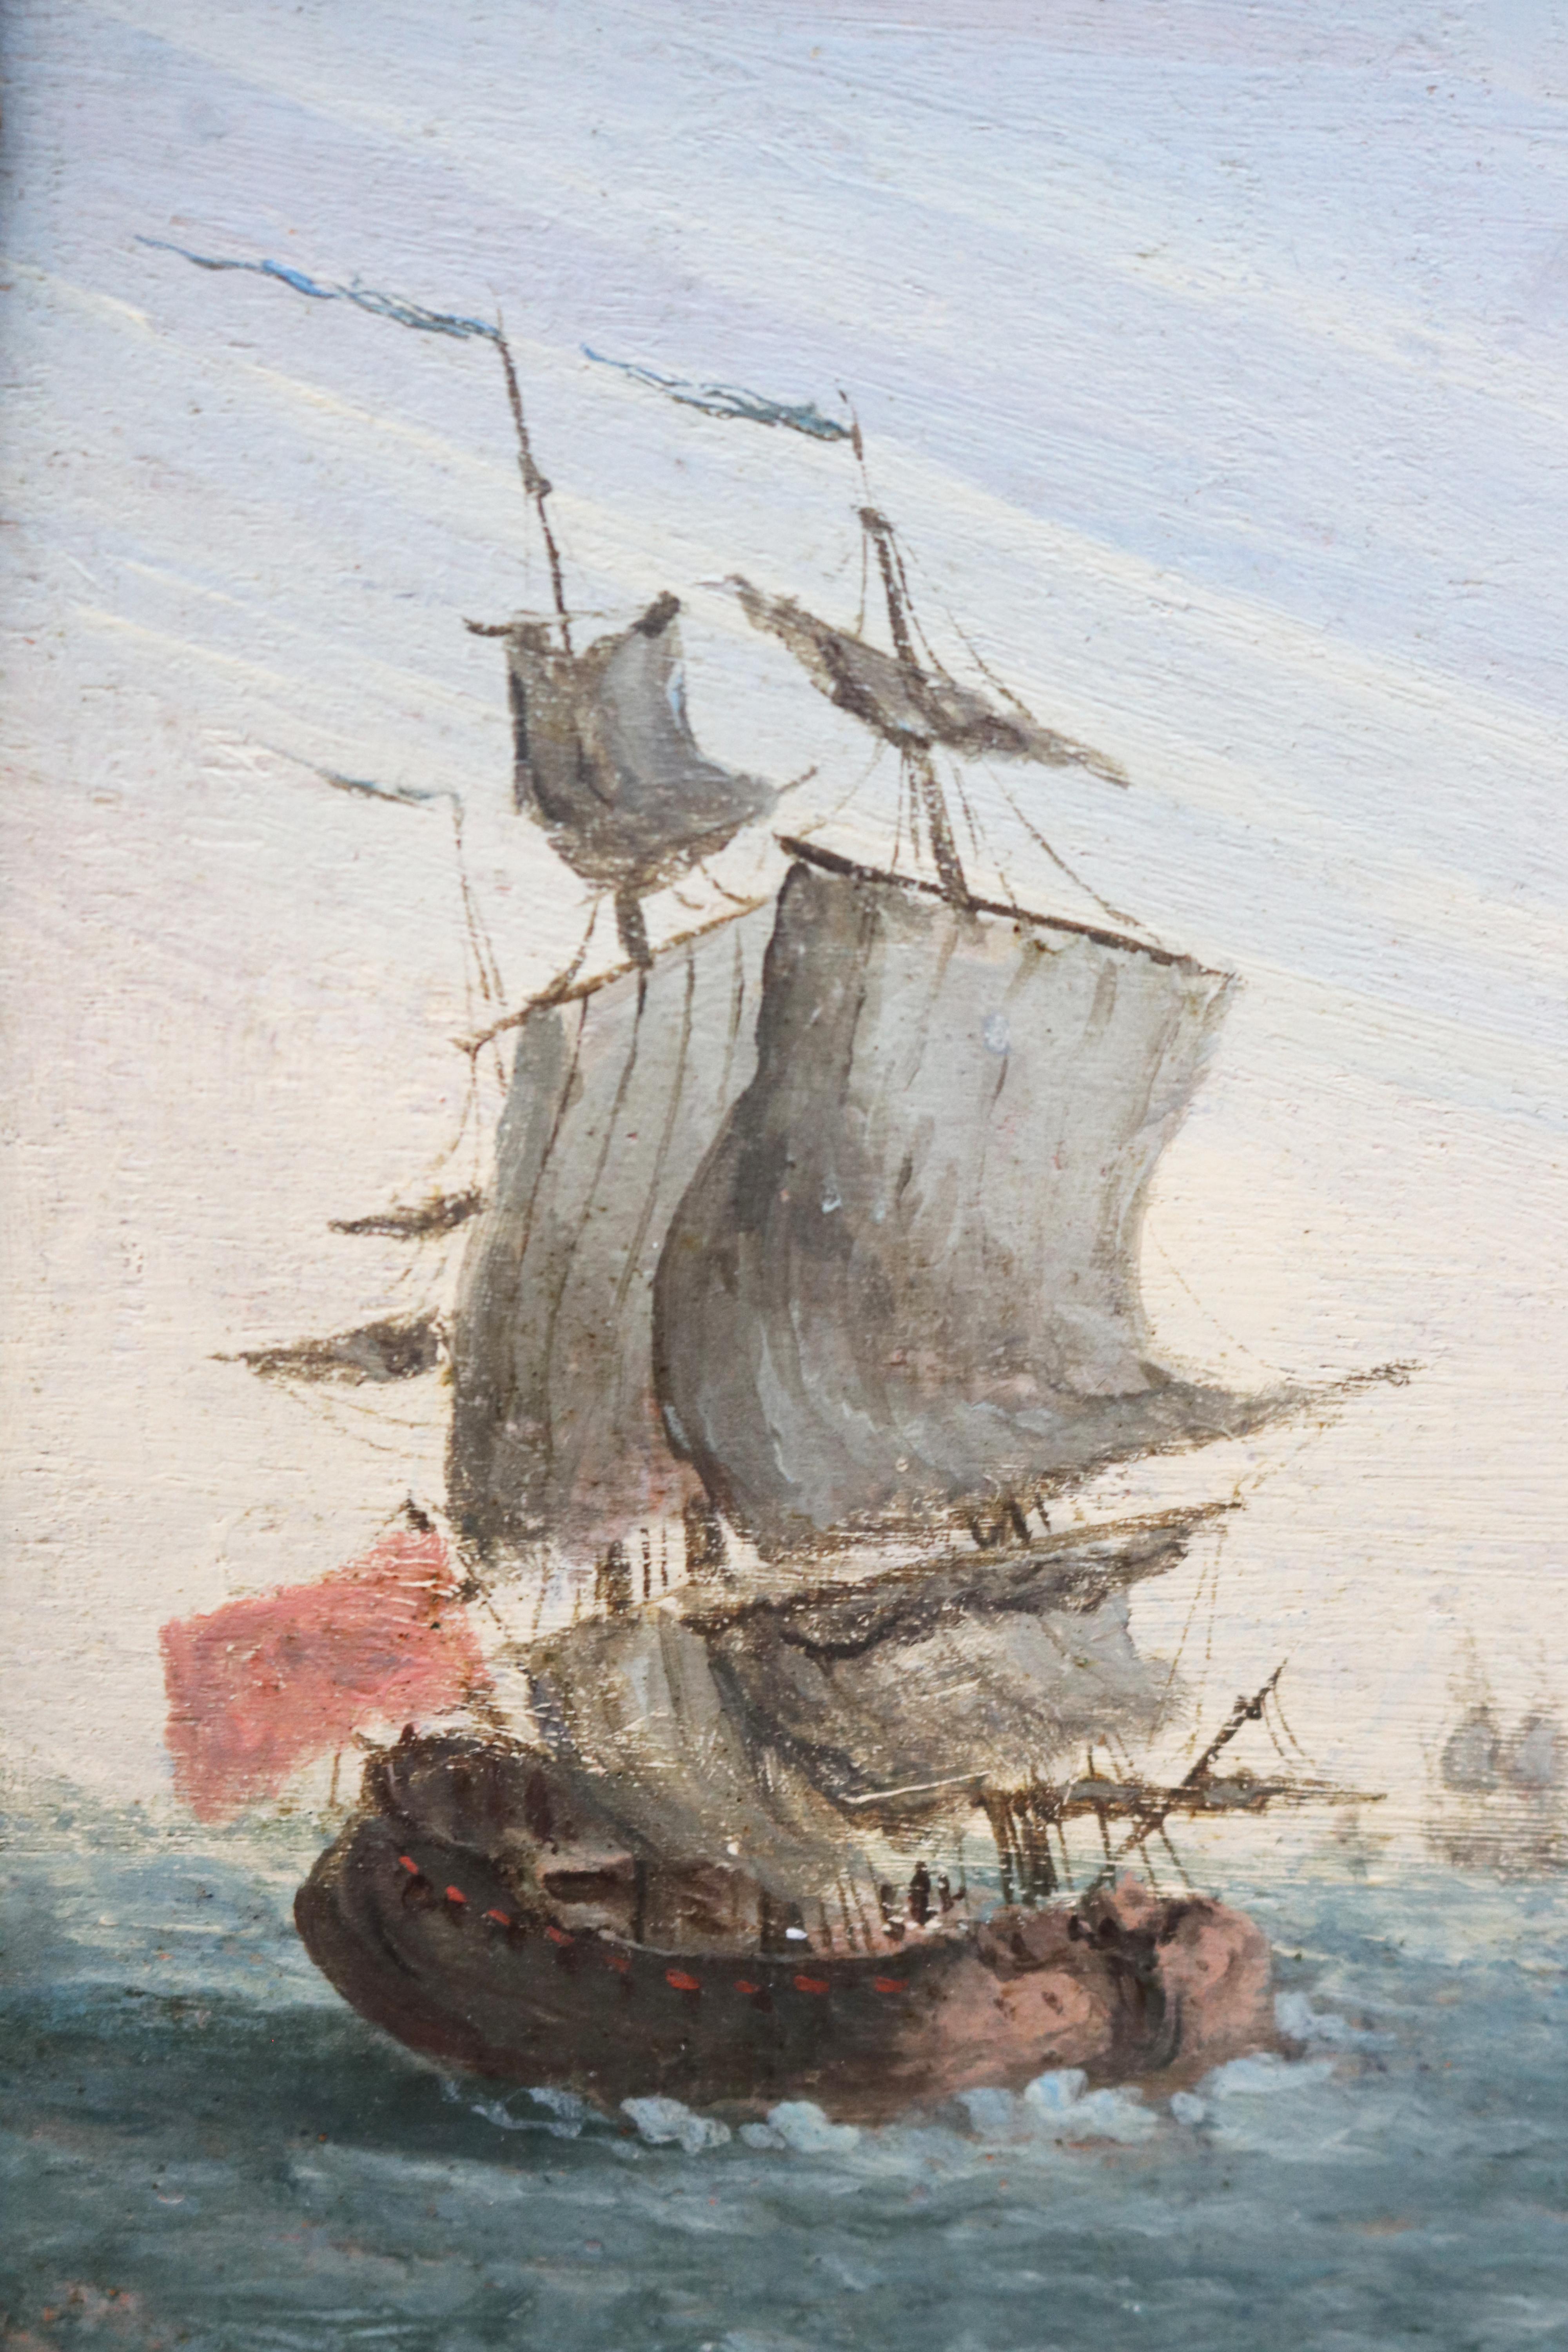 peinture de marine française du 19ème siècle signée à l'huile sur bois avec deux galions et des fortifications côtières. 

Dimensions avec cadre : 26,5 x 30cm.